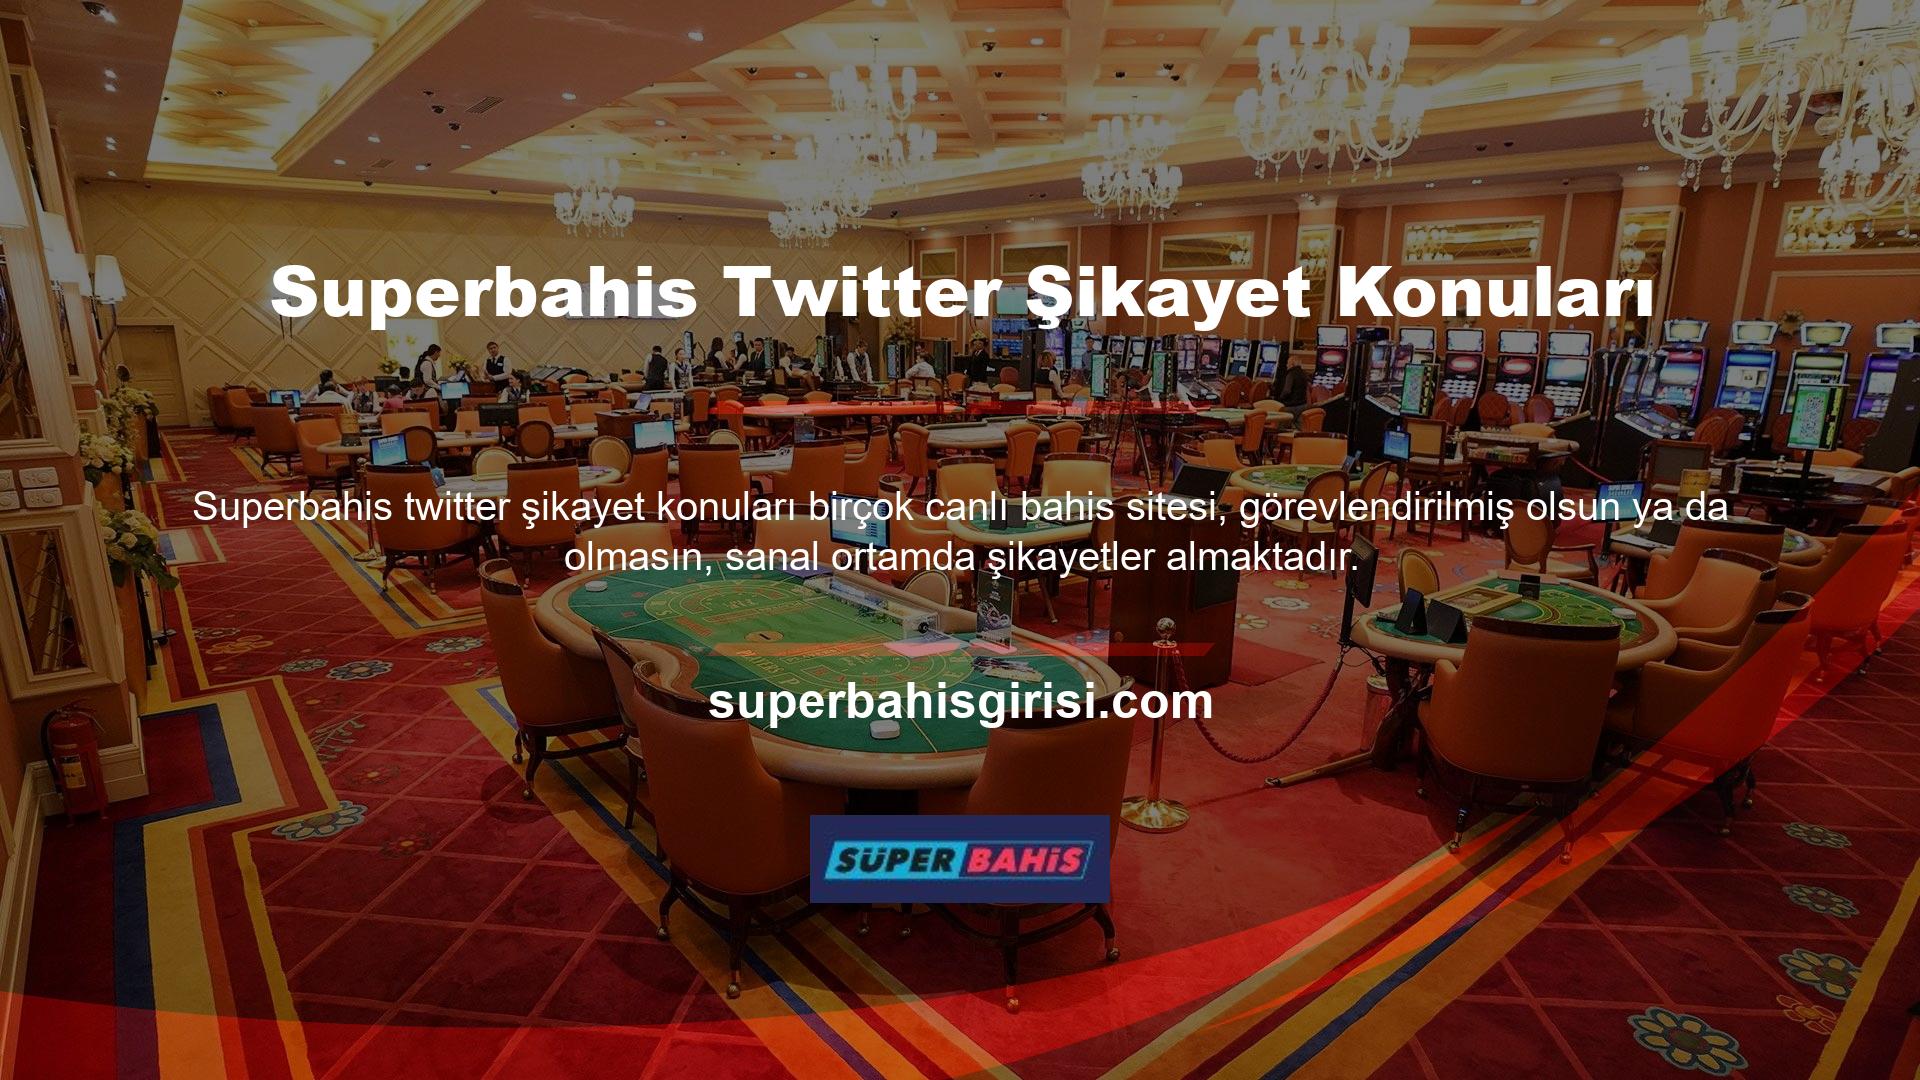 Superbahis Twitter'da casino web siteleriyle ilgili şikayetlerin bir kısmı gerçek olsa da casino web siteleriyle ilgili bazı şikayetler yalnızca kullanıcı sorunlarıyla ilgilidir